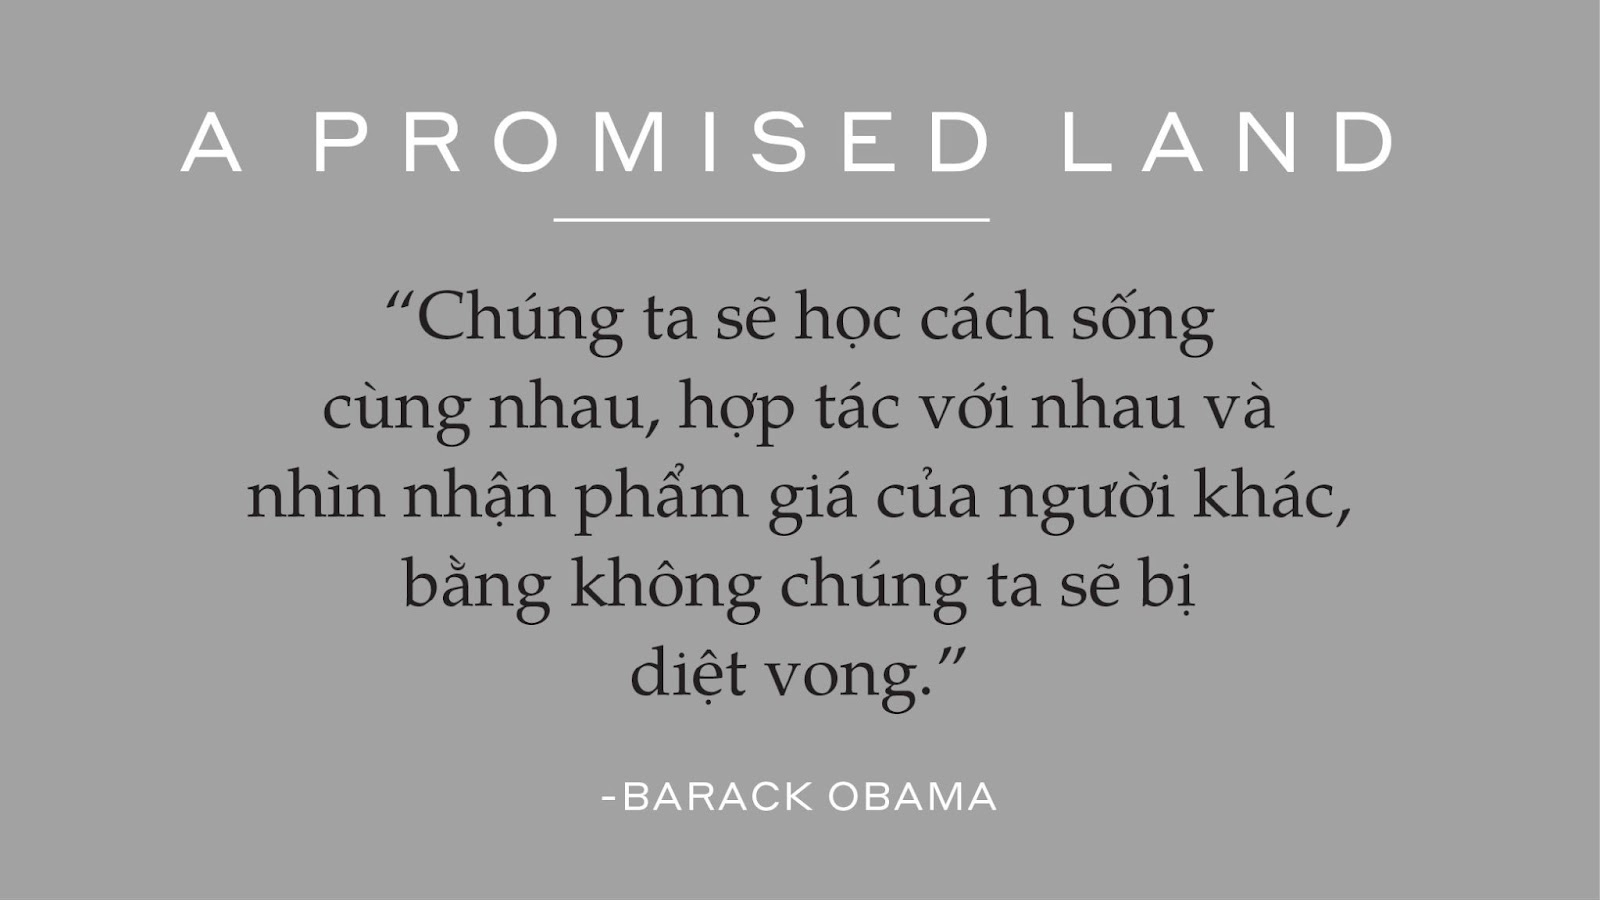 Hồi ký nổi tiếng của cựu Tổng thống Obama xuất bản tại Việt Nam - 4